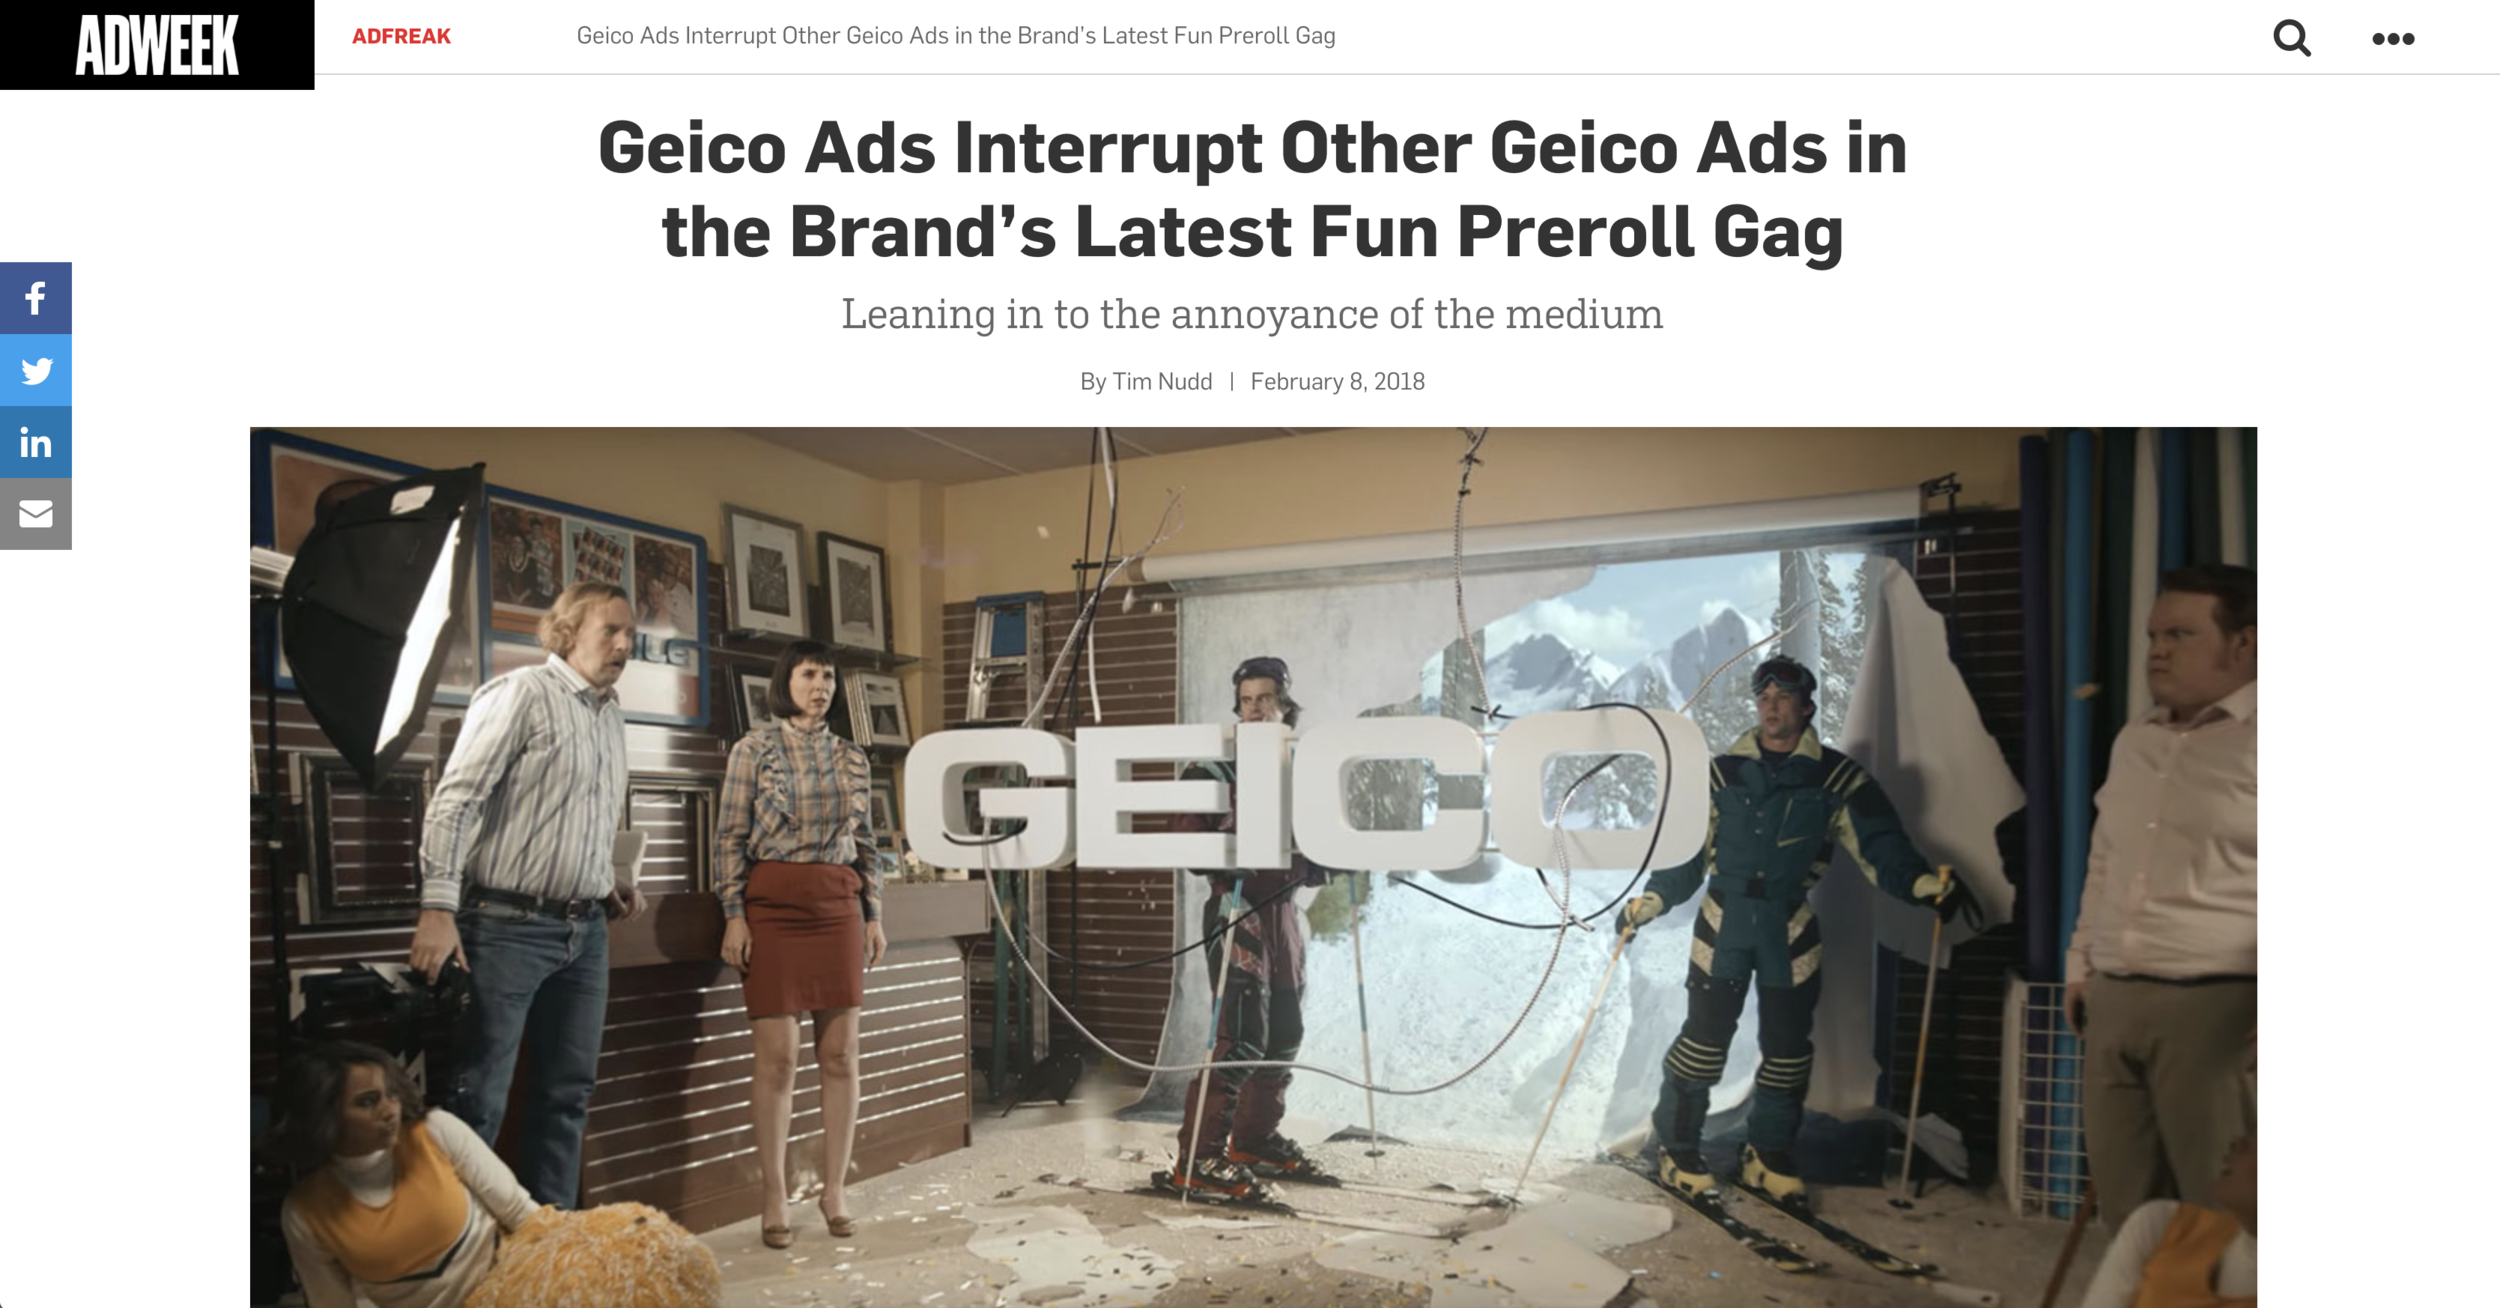 GEICO Ads Interrupt Other GEICO Ads